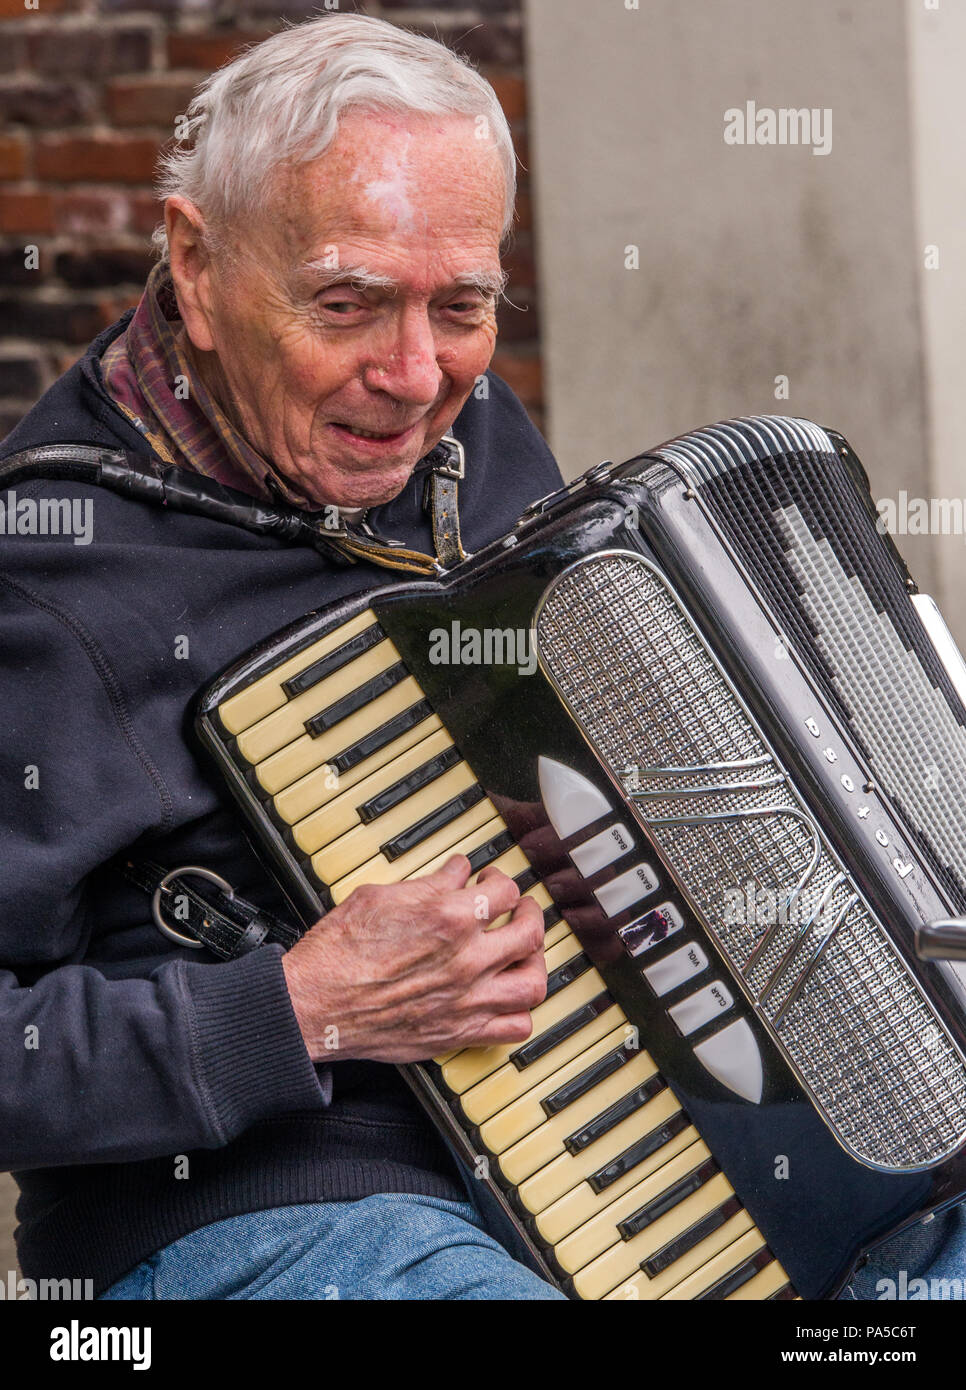 Grauen Haaren gemütlich alten Mann spielt ein Schwarzer, Stahl und Elfenbein kodiert, Akkordeon und Gesang an Farmers Market in Seattle, Washington. Stockfoto